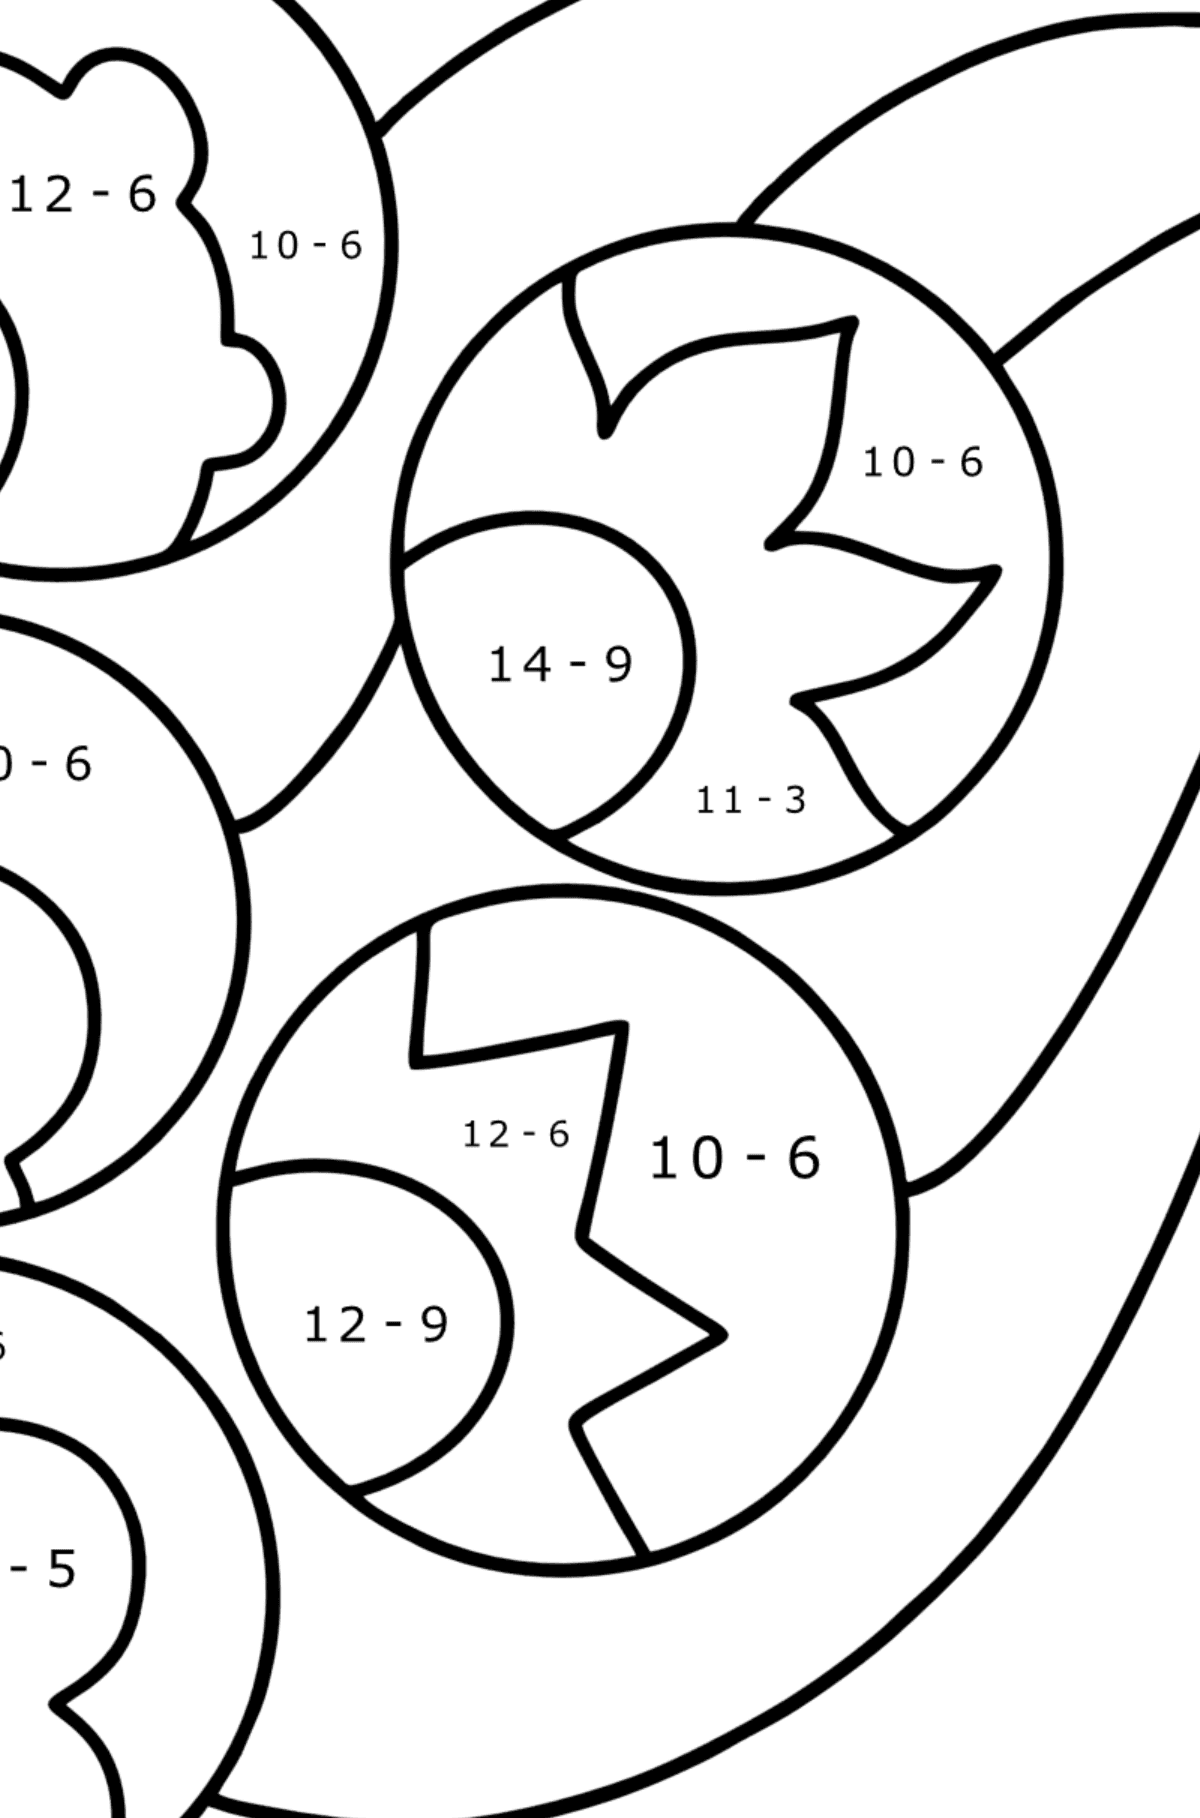 Ausmalbild Zentangle inspiriert - Mathe Ausmalbilder - Subtraktion für Kinder